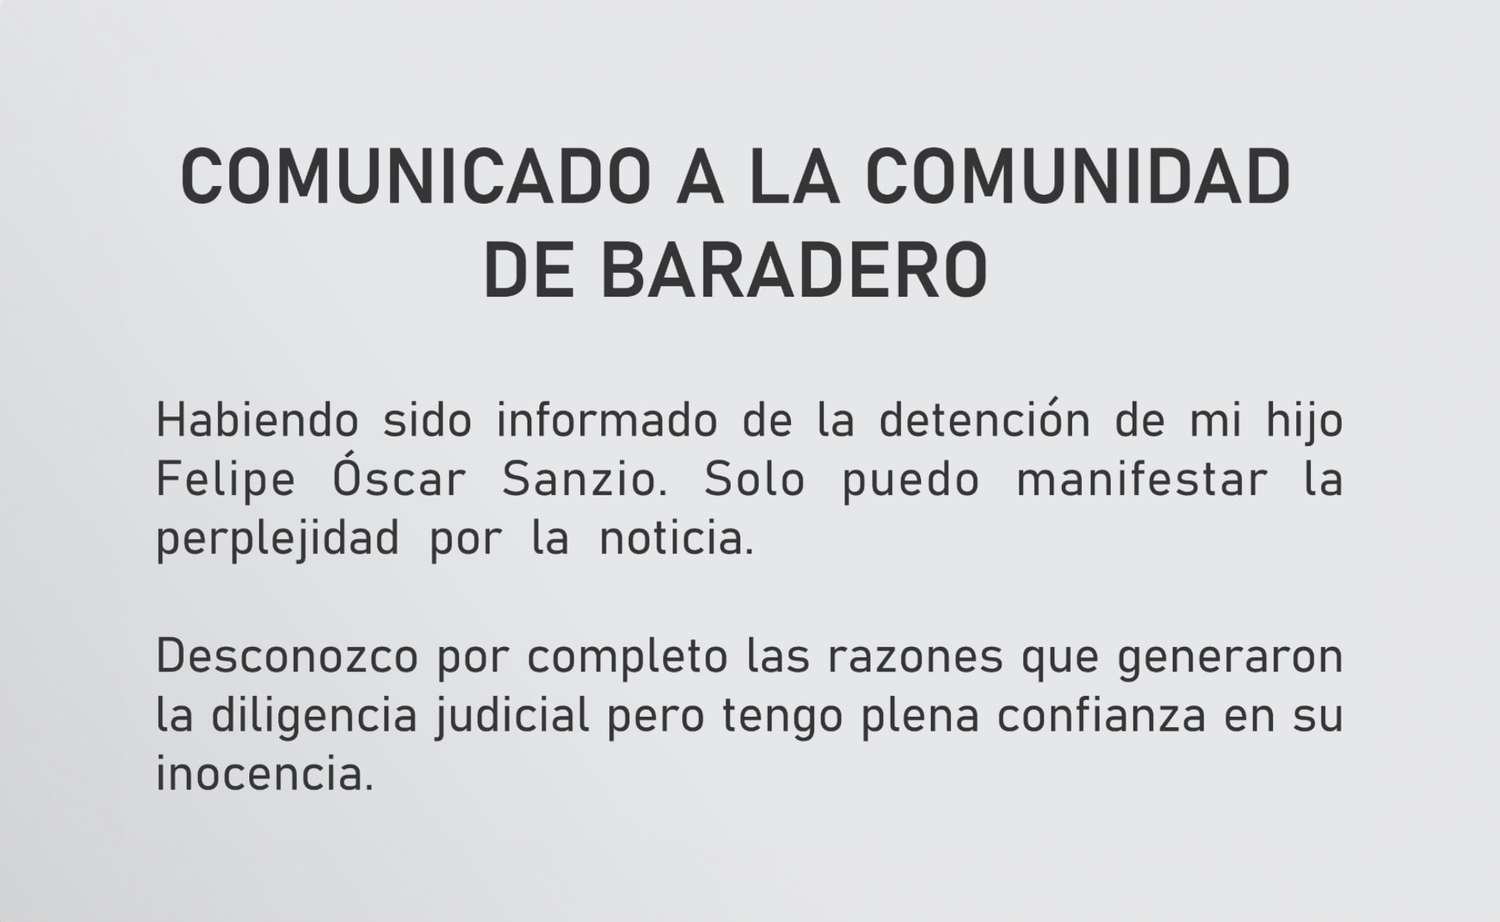 Baradero: intendente “Tito” Sanzio perplejo por la detención de su hijo Felipe